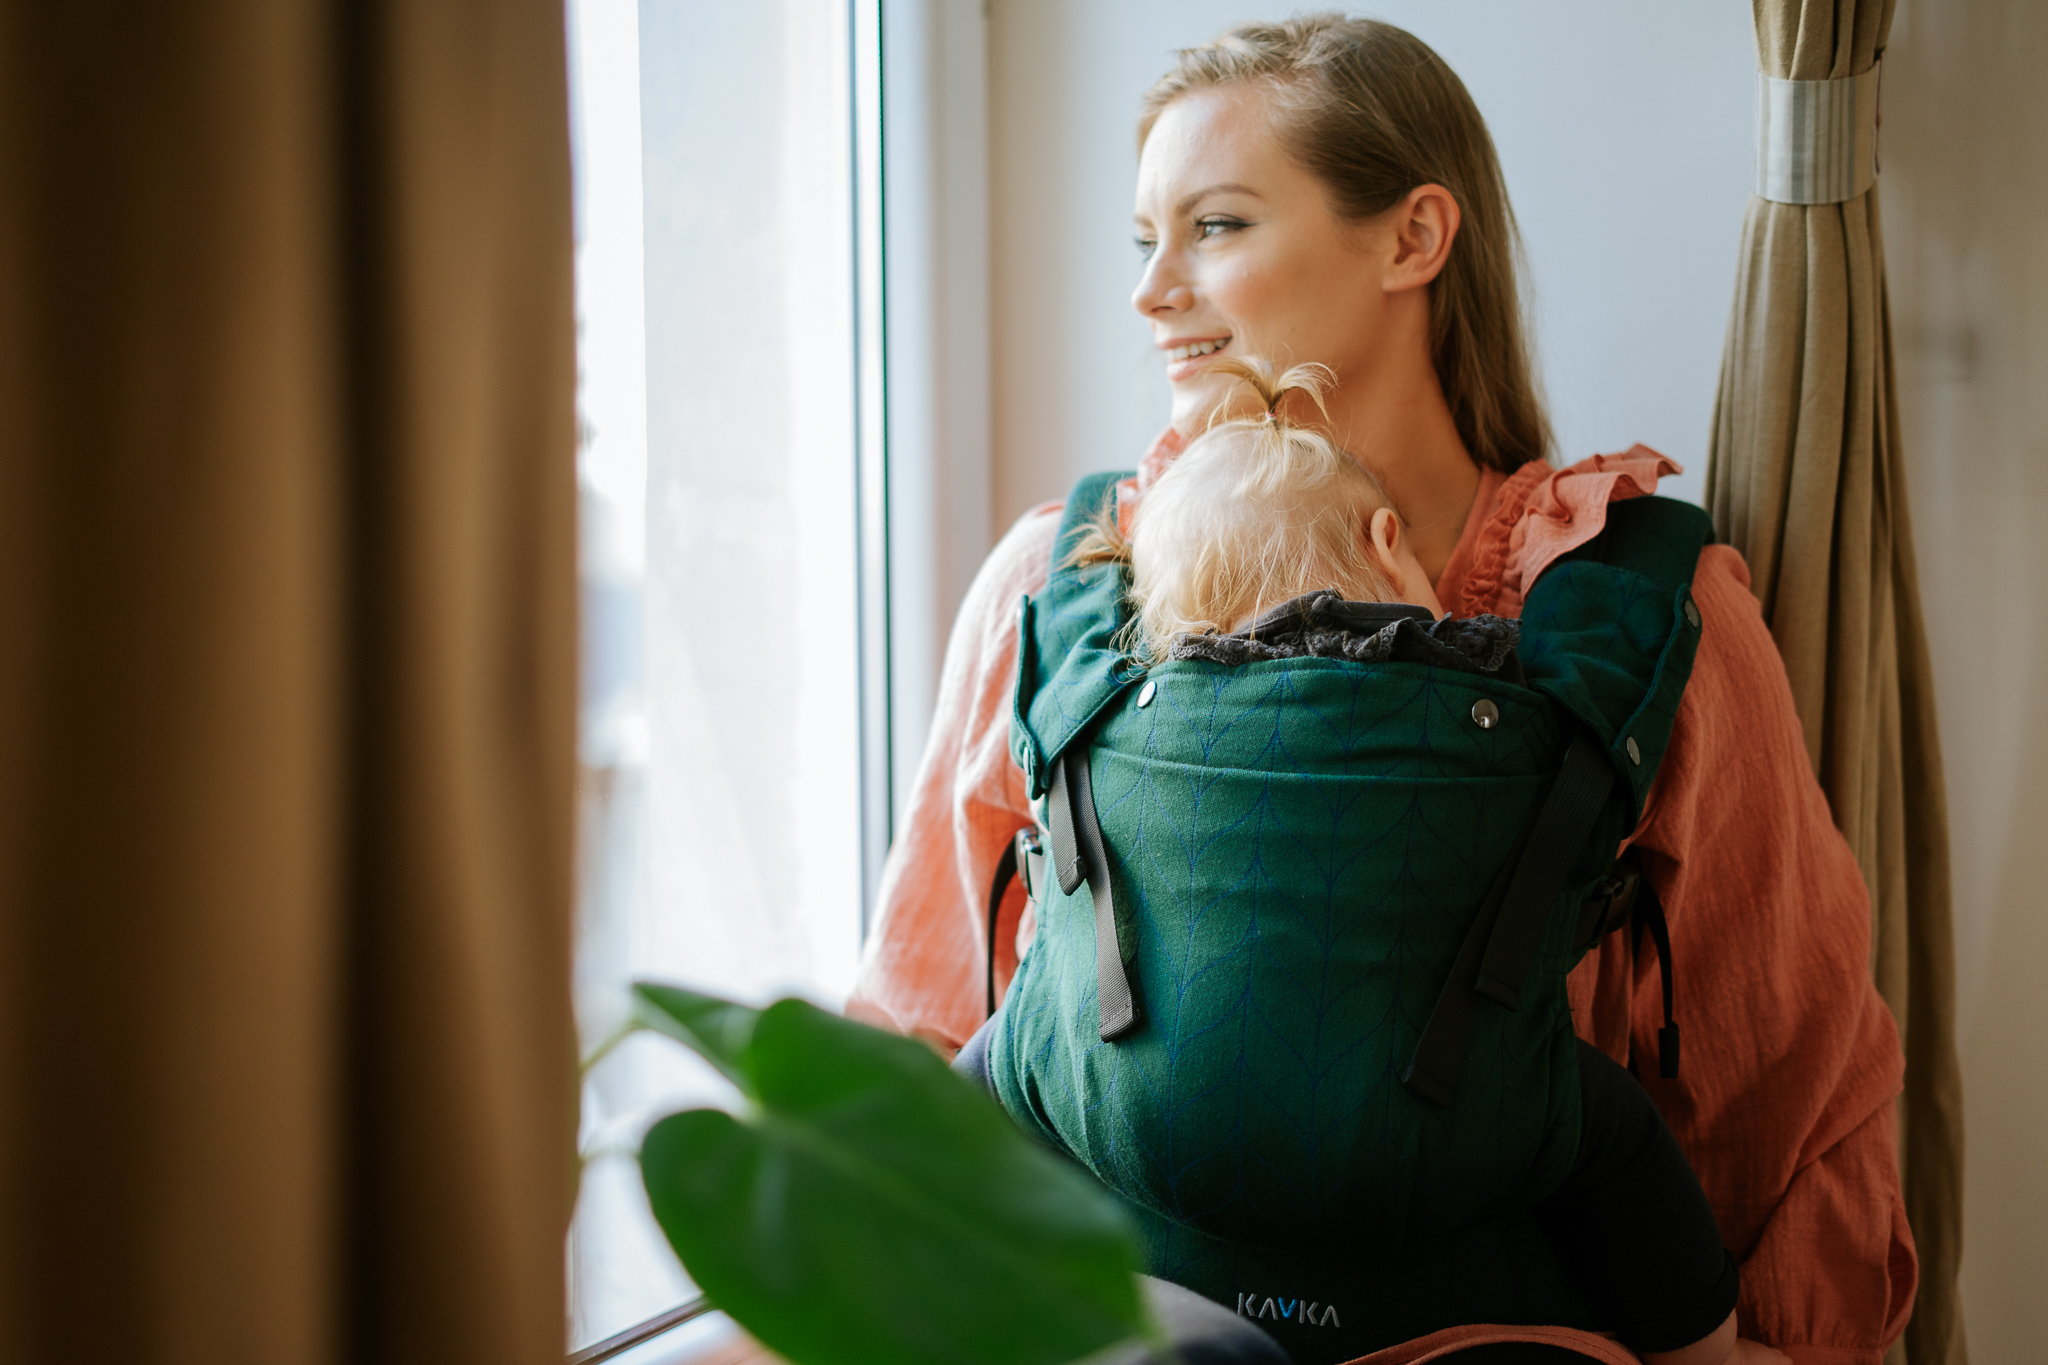 Nosidełka dla niemowląt: Od kiedy można nosić dziecko w nosidle?